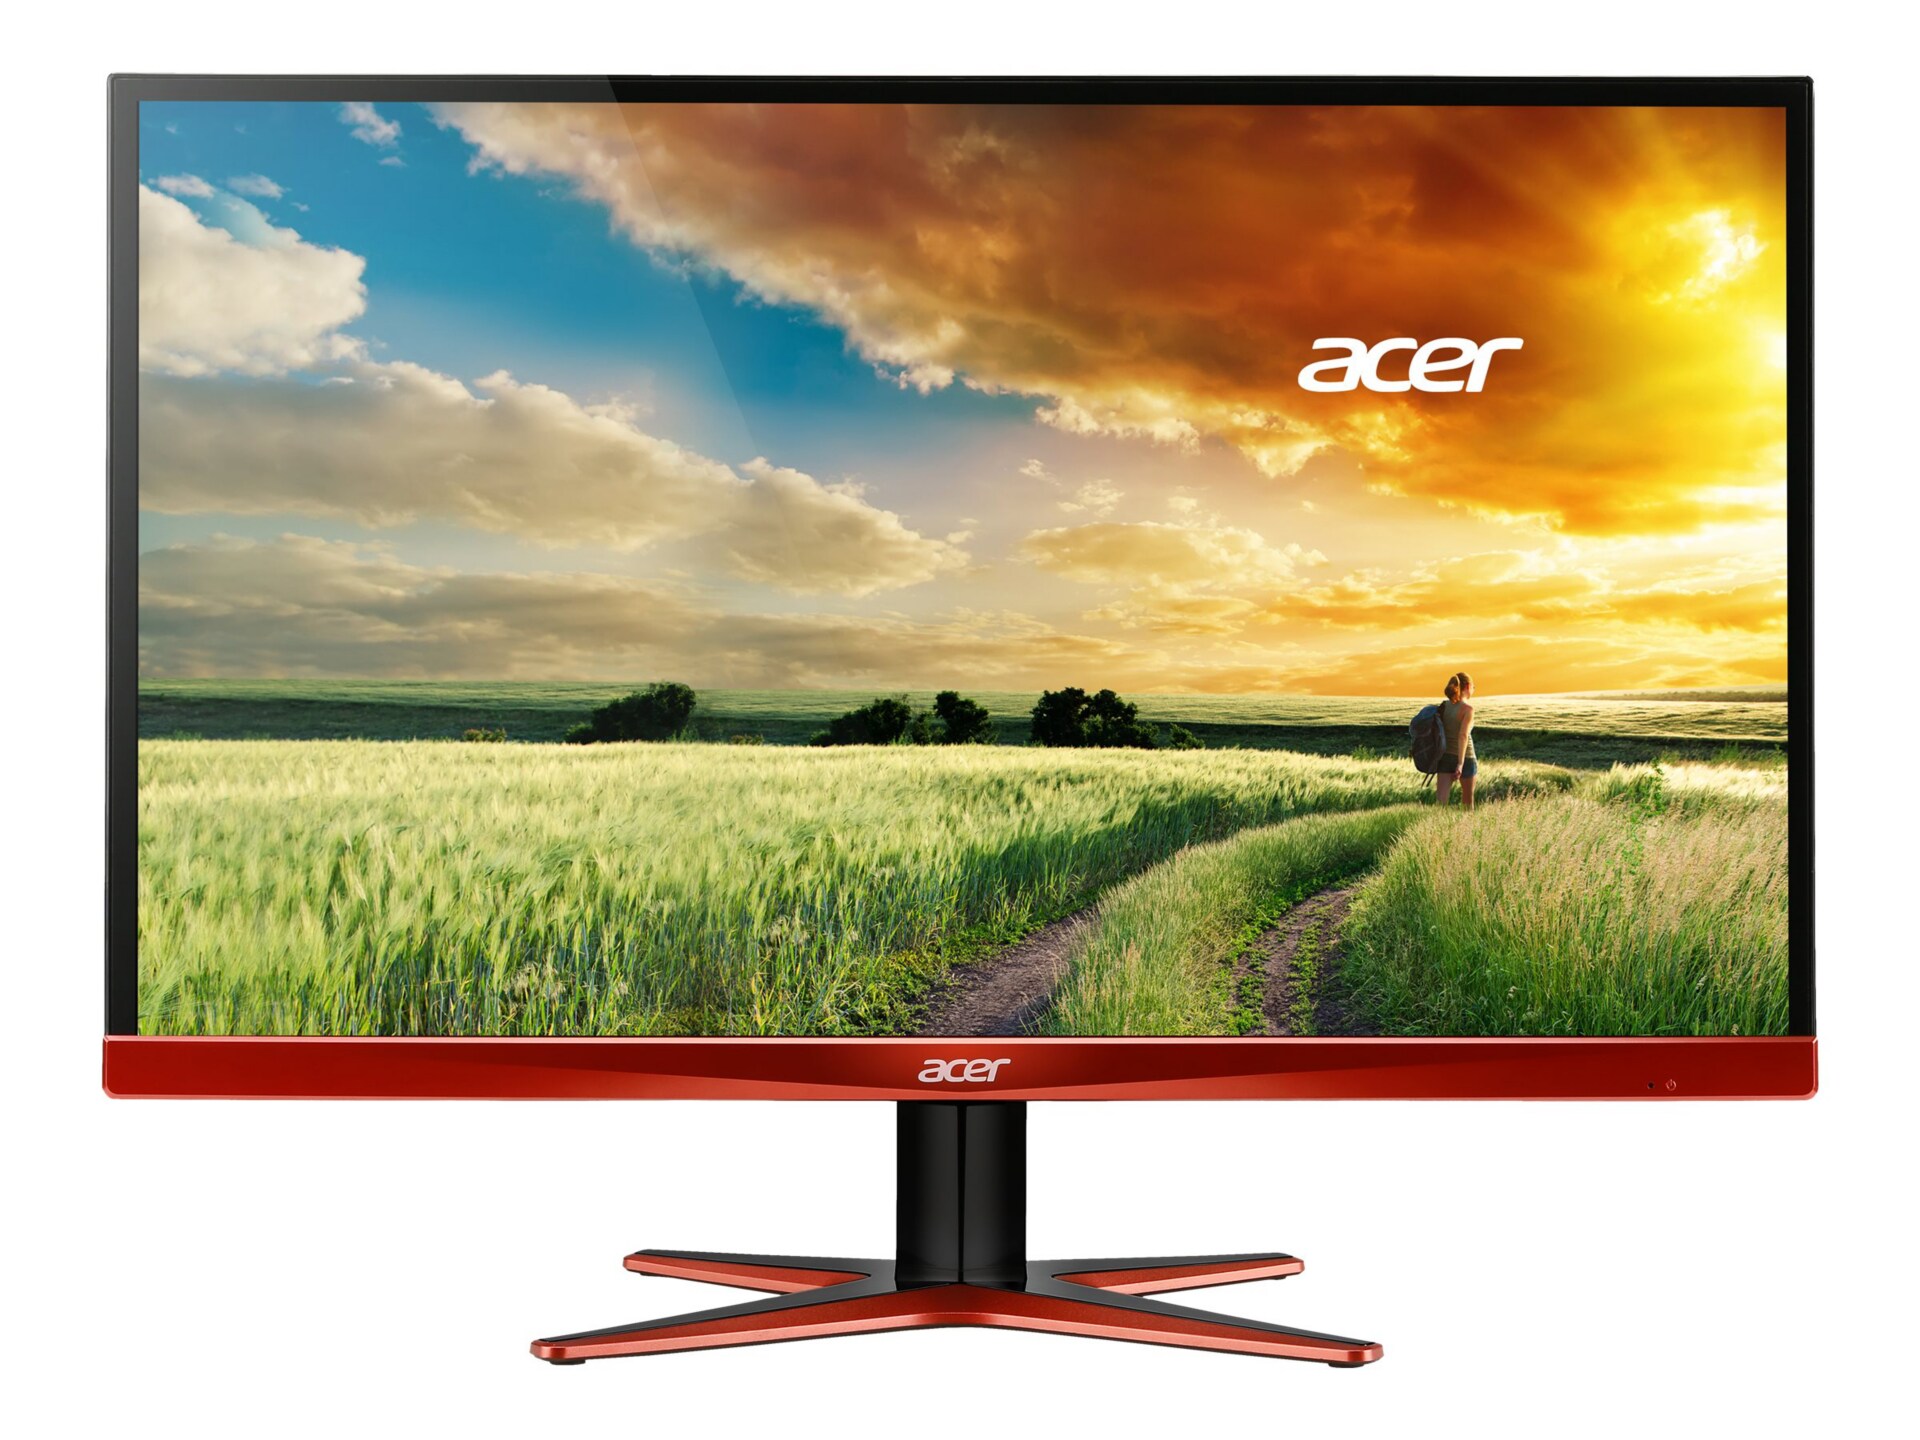 Acer XG270HU - LED monitor - 27"